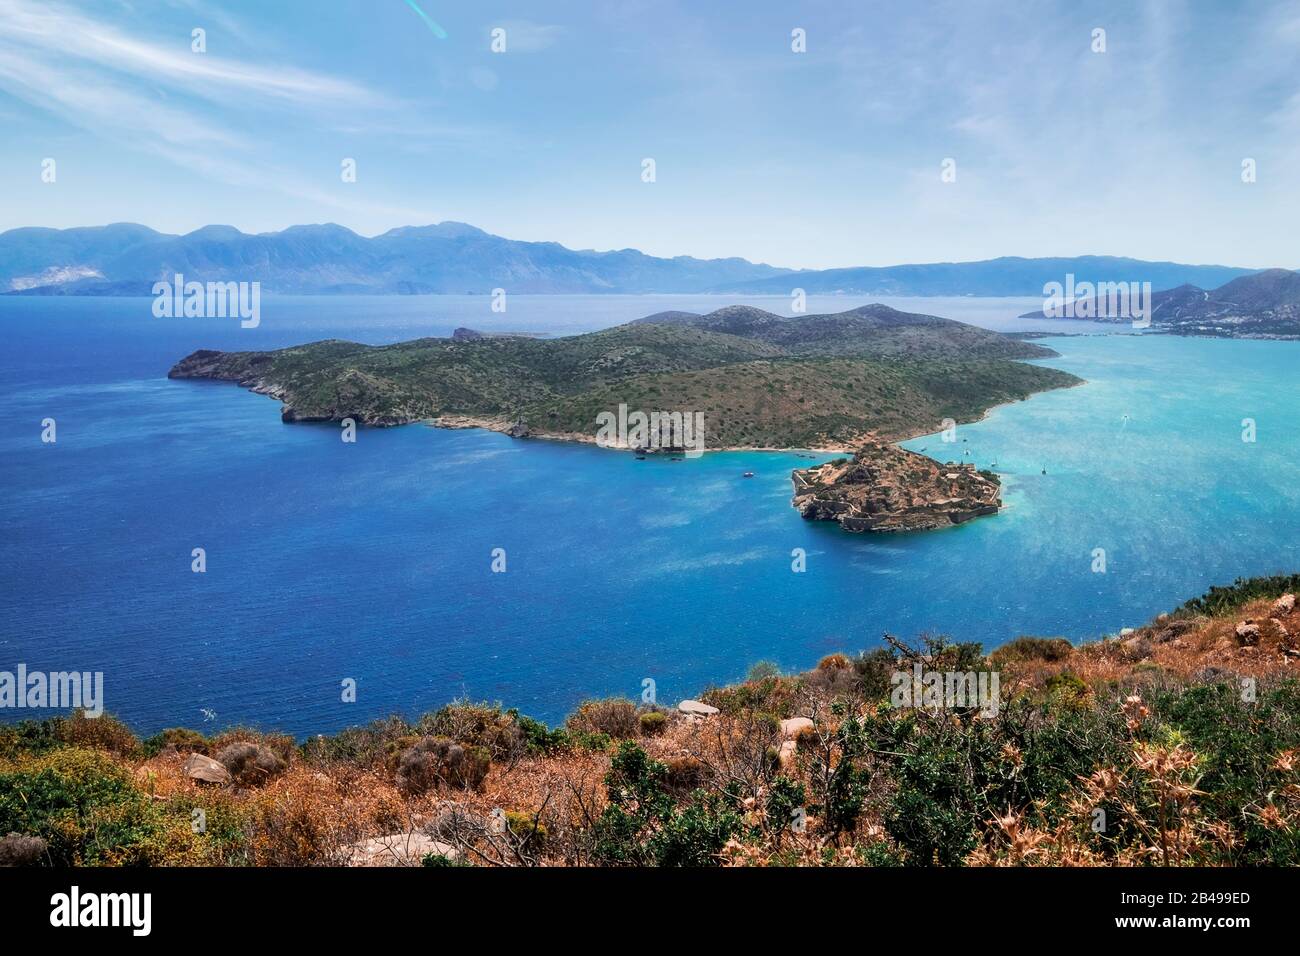 Erstaunliche Szene von Spinalonga Island mit alter Festung und ehemaliger Lepra-Kolonie. Boote, die türkisblaues Wasser der ägetischen See auf der Insel Crete schwimmen. Exotisch Stockfoto